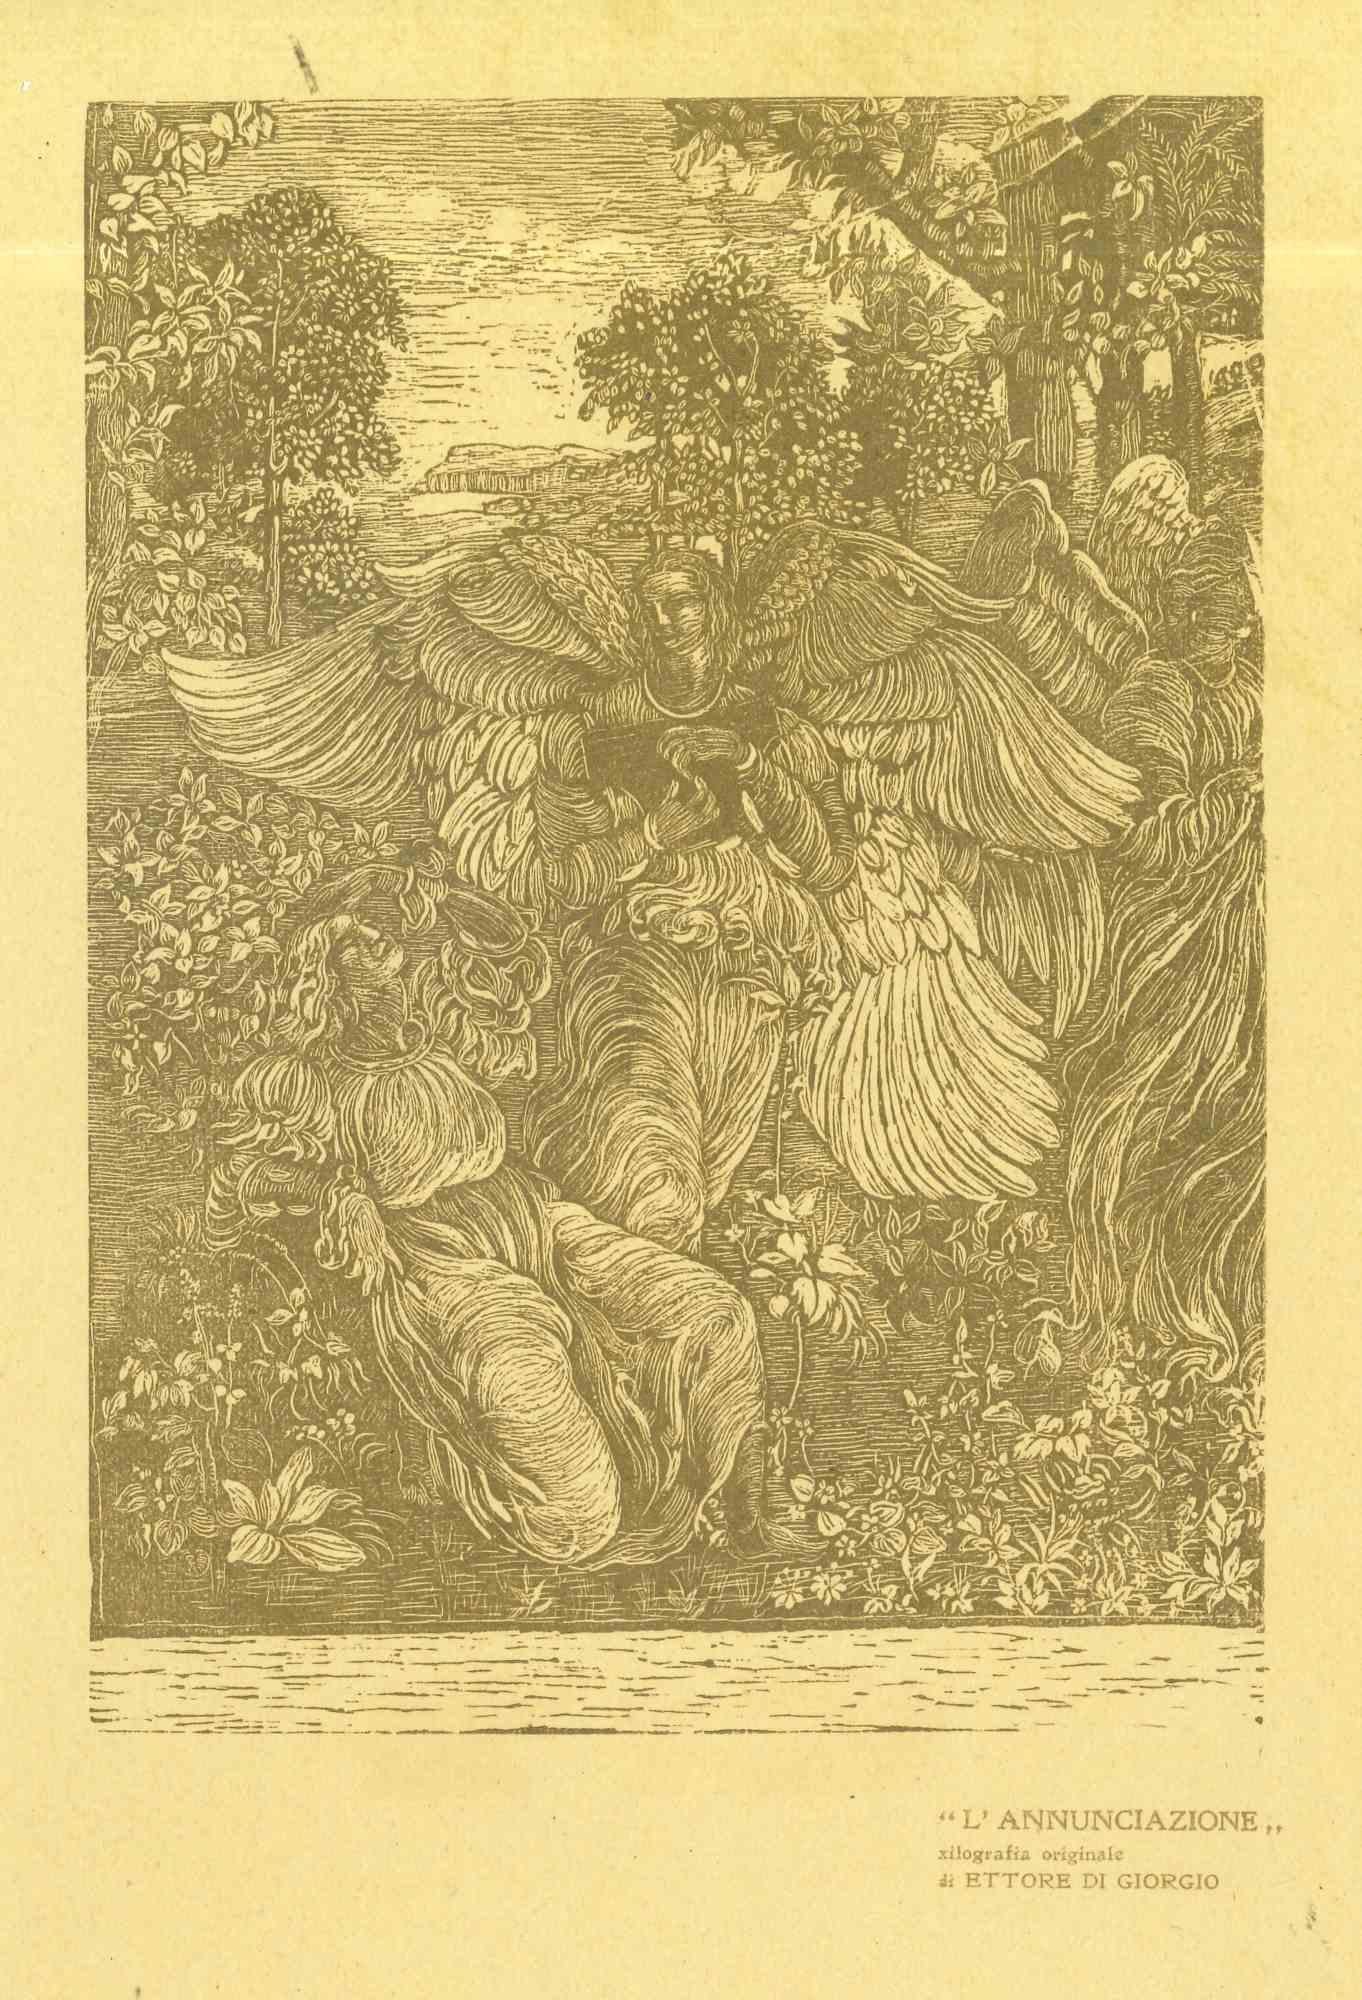 Annunciation - Original Woodcut by Ettore di Giorgio - Early 20th Century